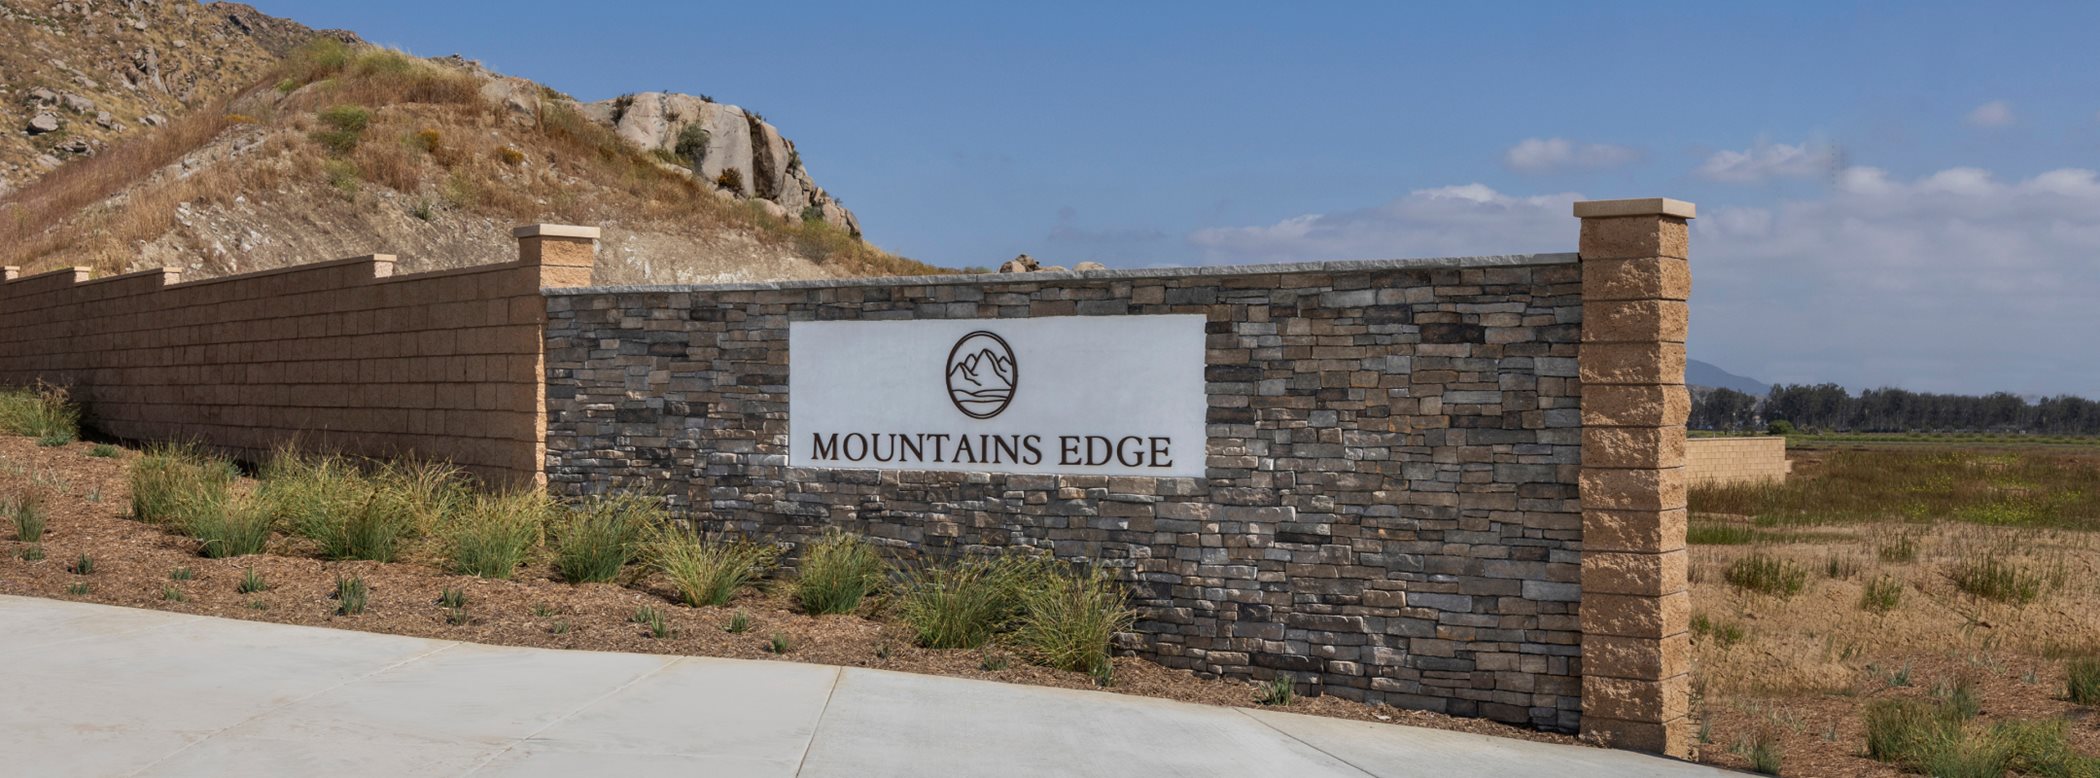 Mountains edge hero monument sign